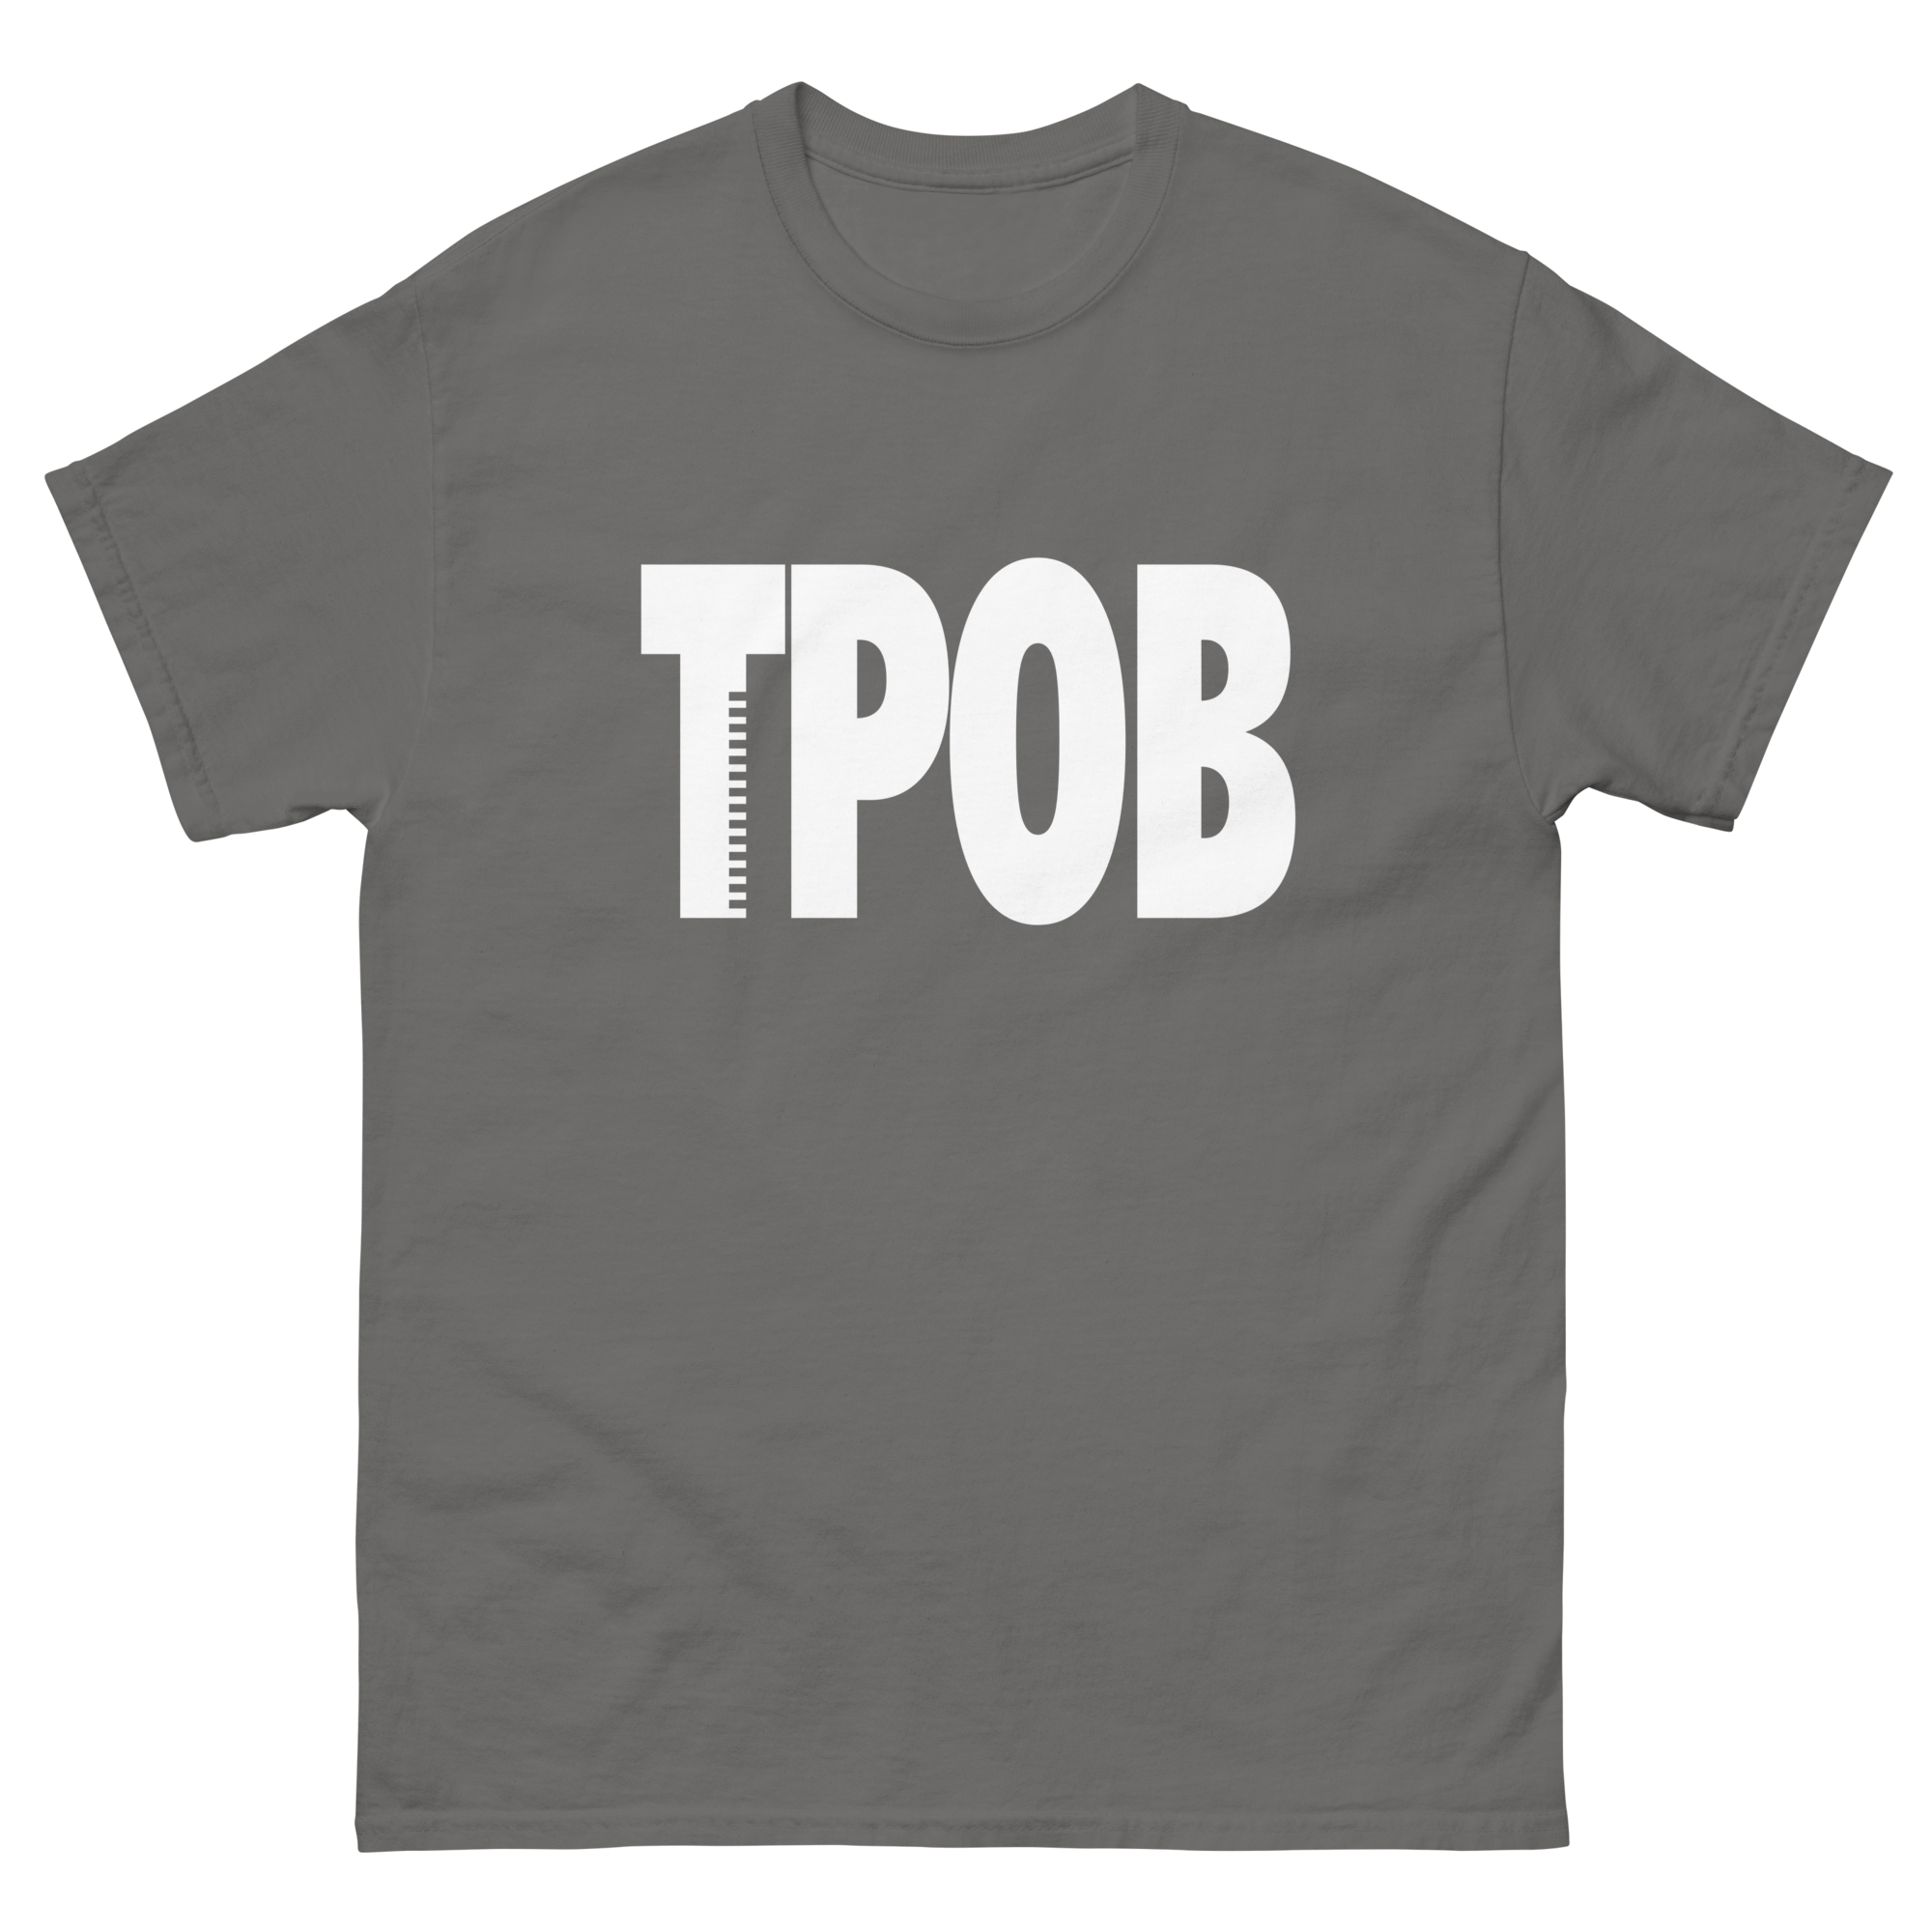 TPOB white logo tee